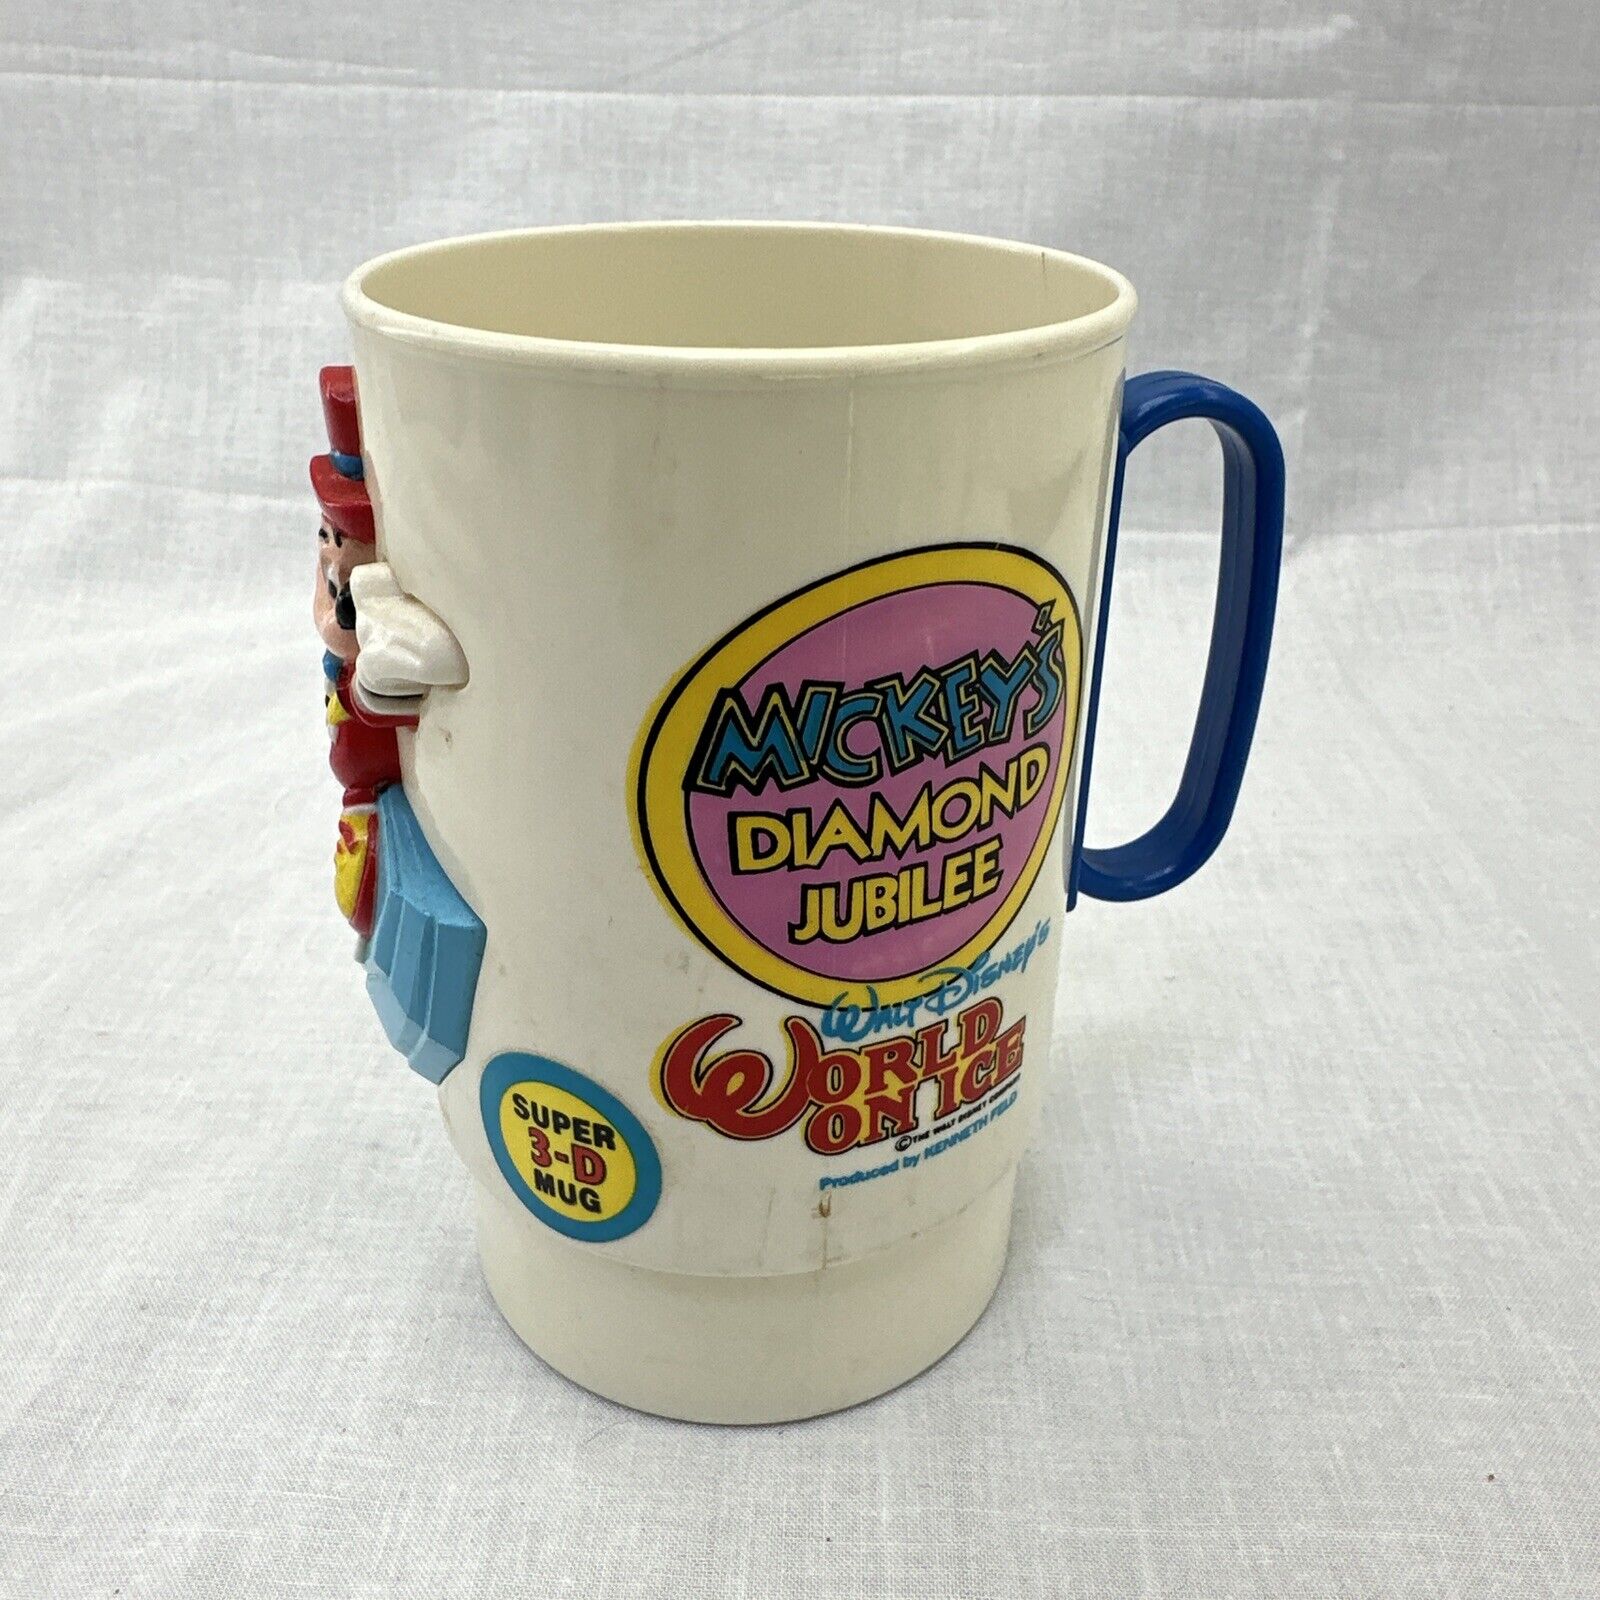 Vintage 1990’s plastic Super3D mug, Mickeys Diamond Jubilee